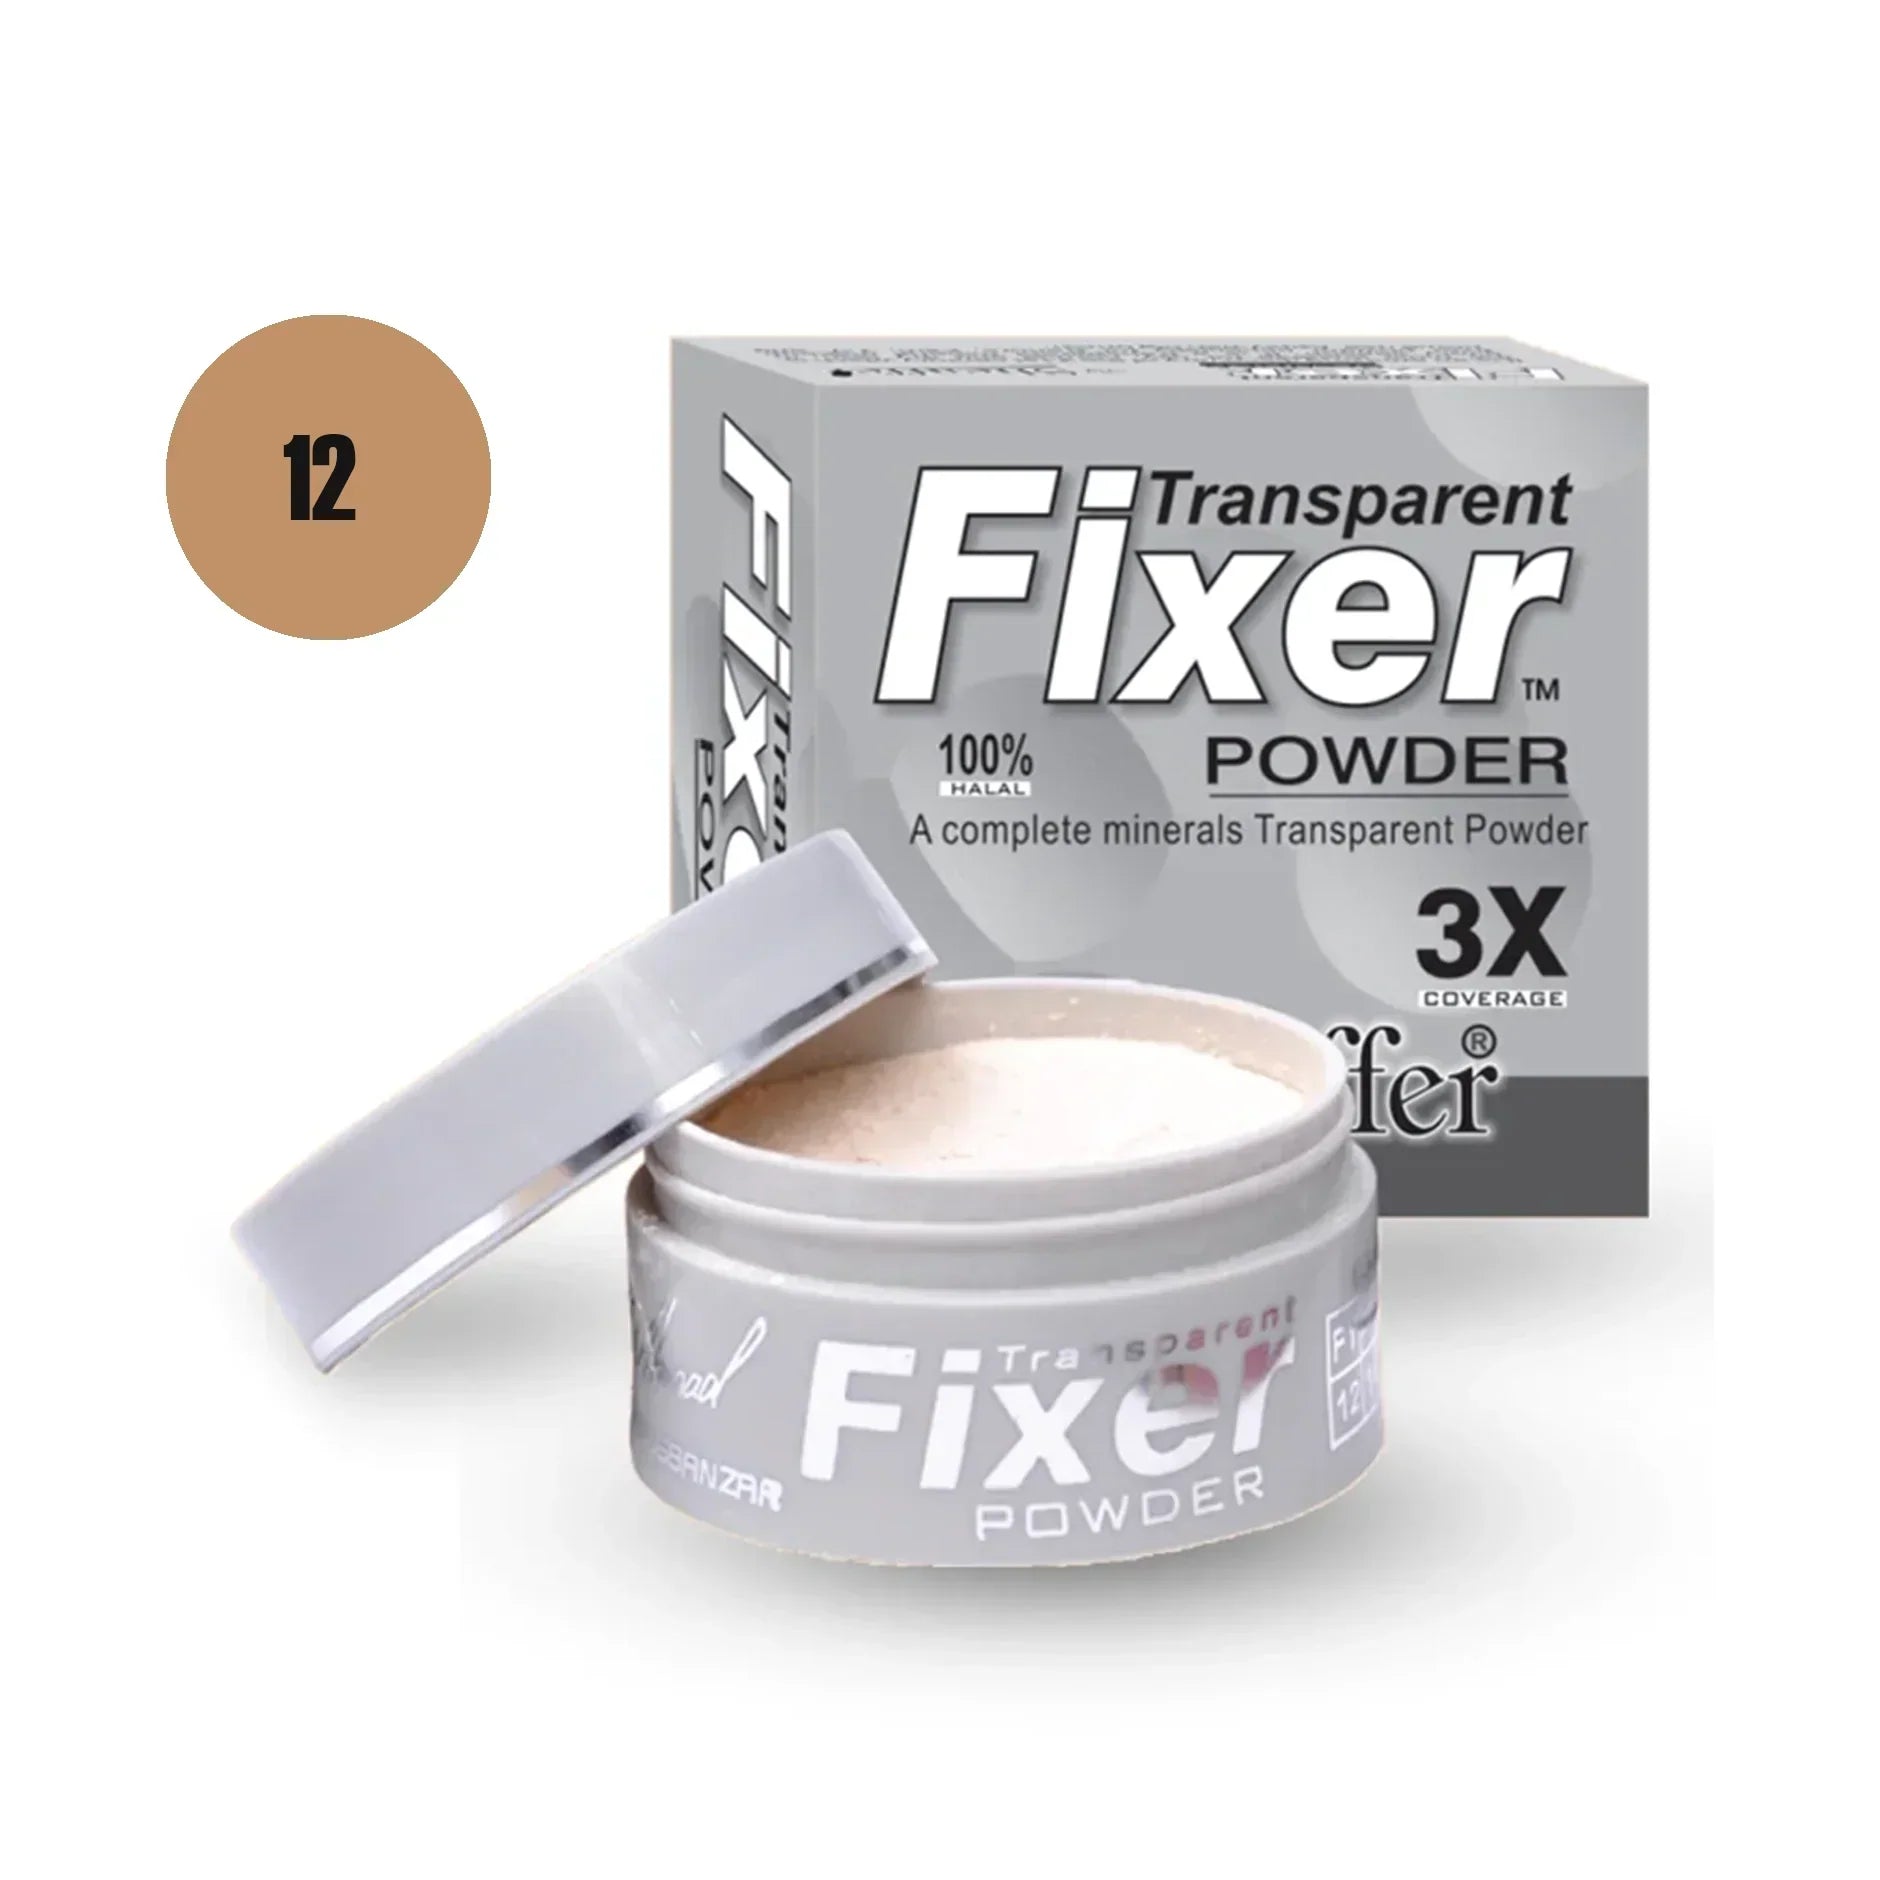 Sheaffer Transparent Fixer Powder Shade No 08 - Retailershop - Online Shopping Center